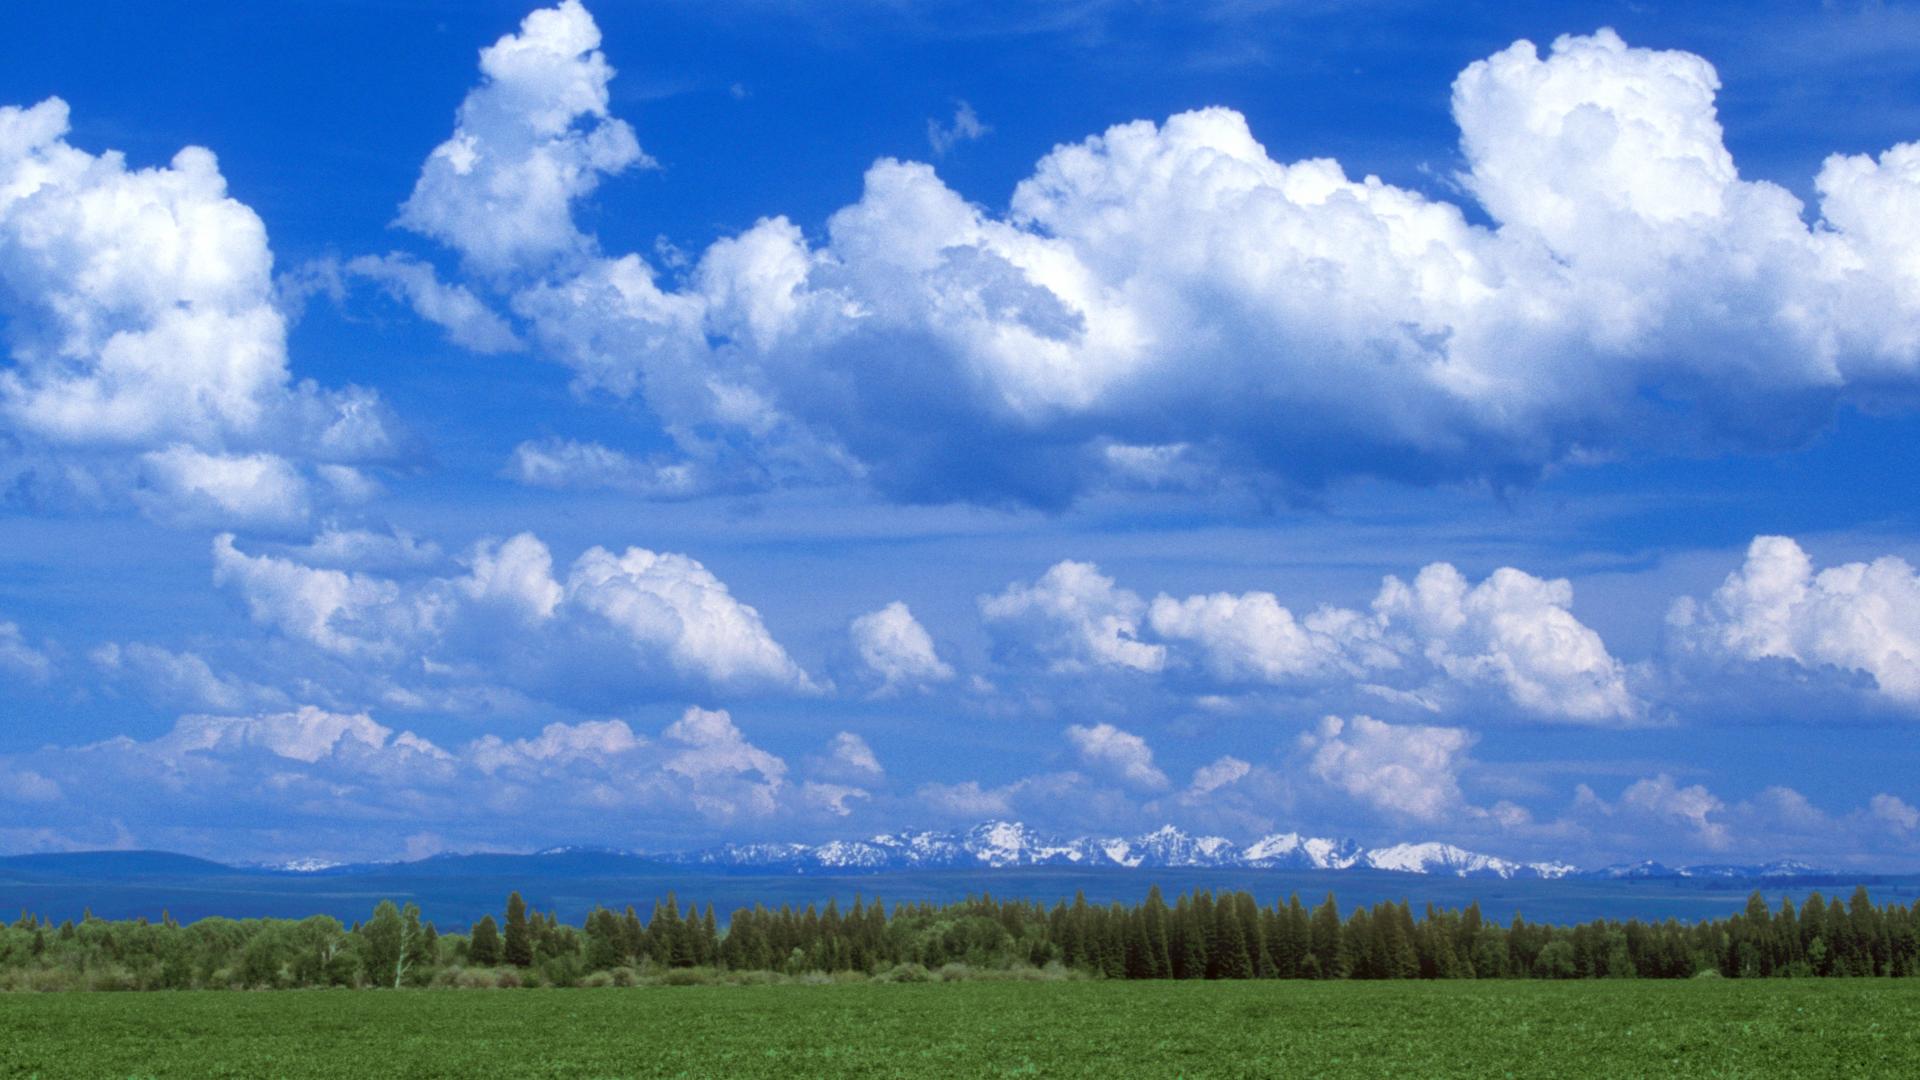 Với hình nền mây, bạn có thể thấy được vẻ đẹp tự nhiên của thế giới xung quanh chúng ta. Hãy cùng tìm hiểu những bức ảnh này để bắt đầu một ngày mới tràn đầy năng lượng.